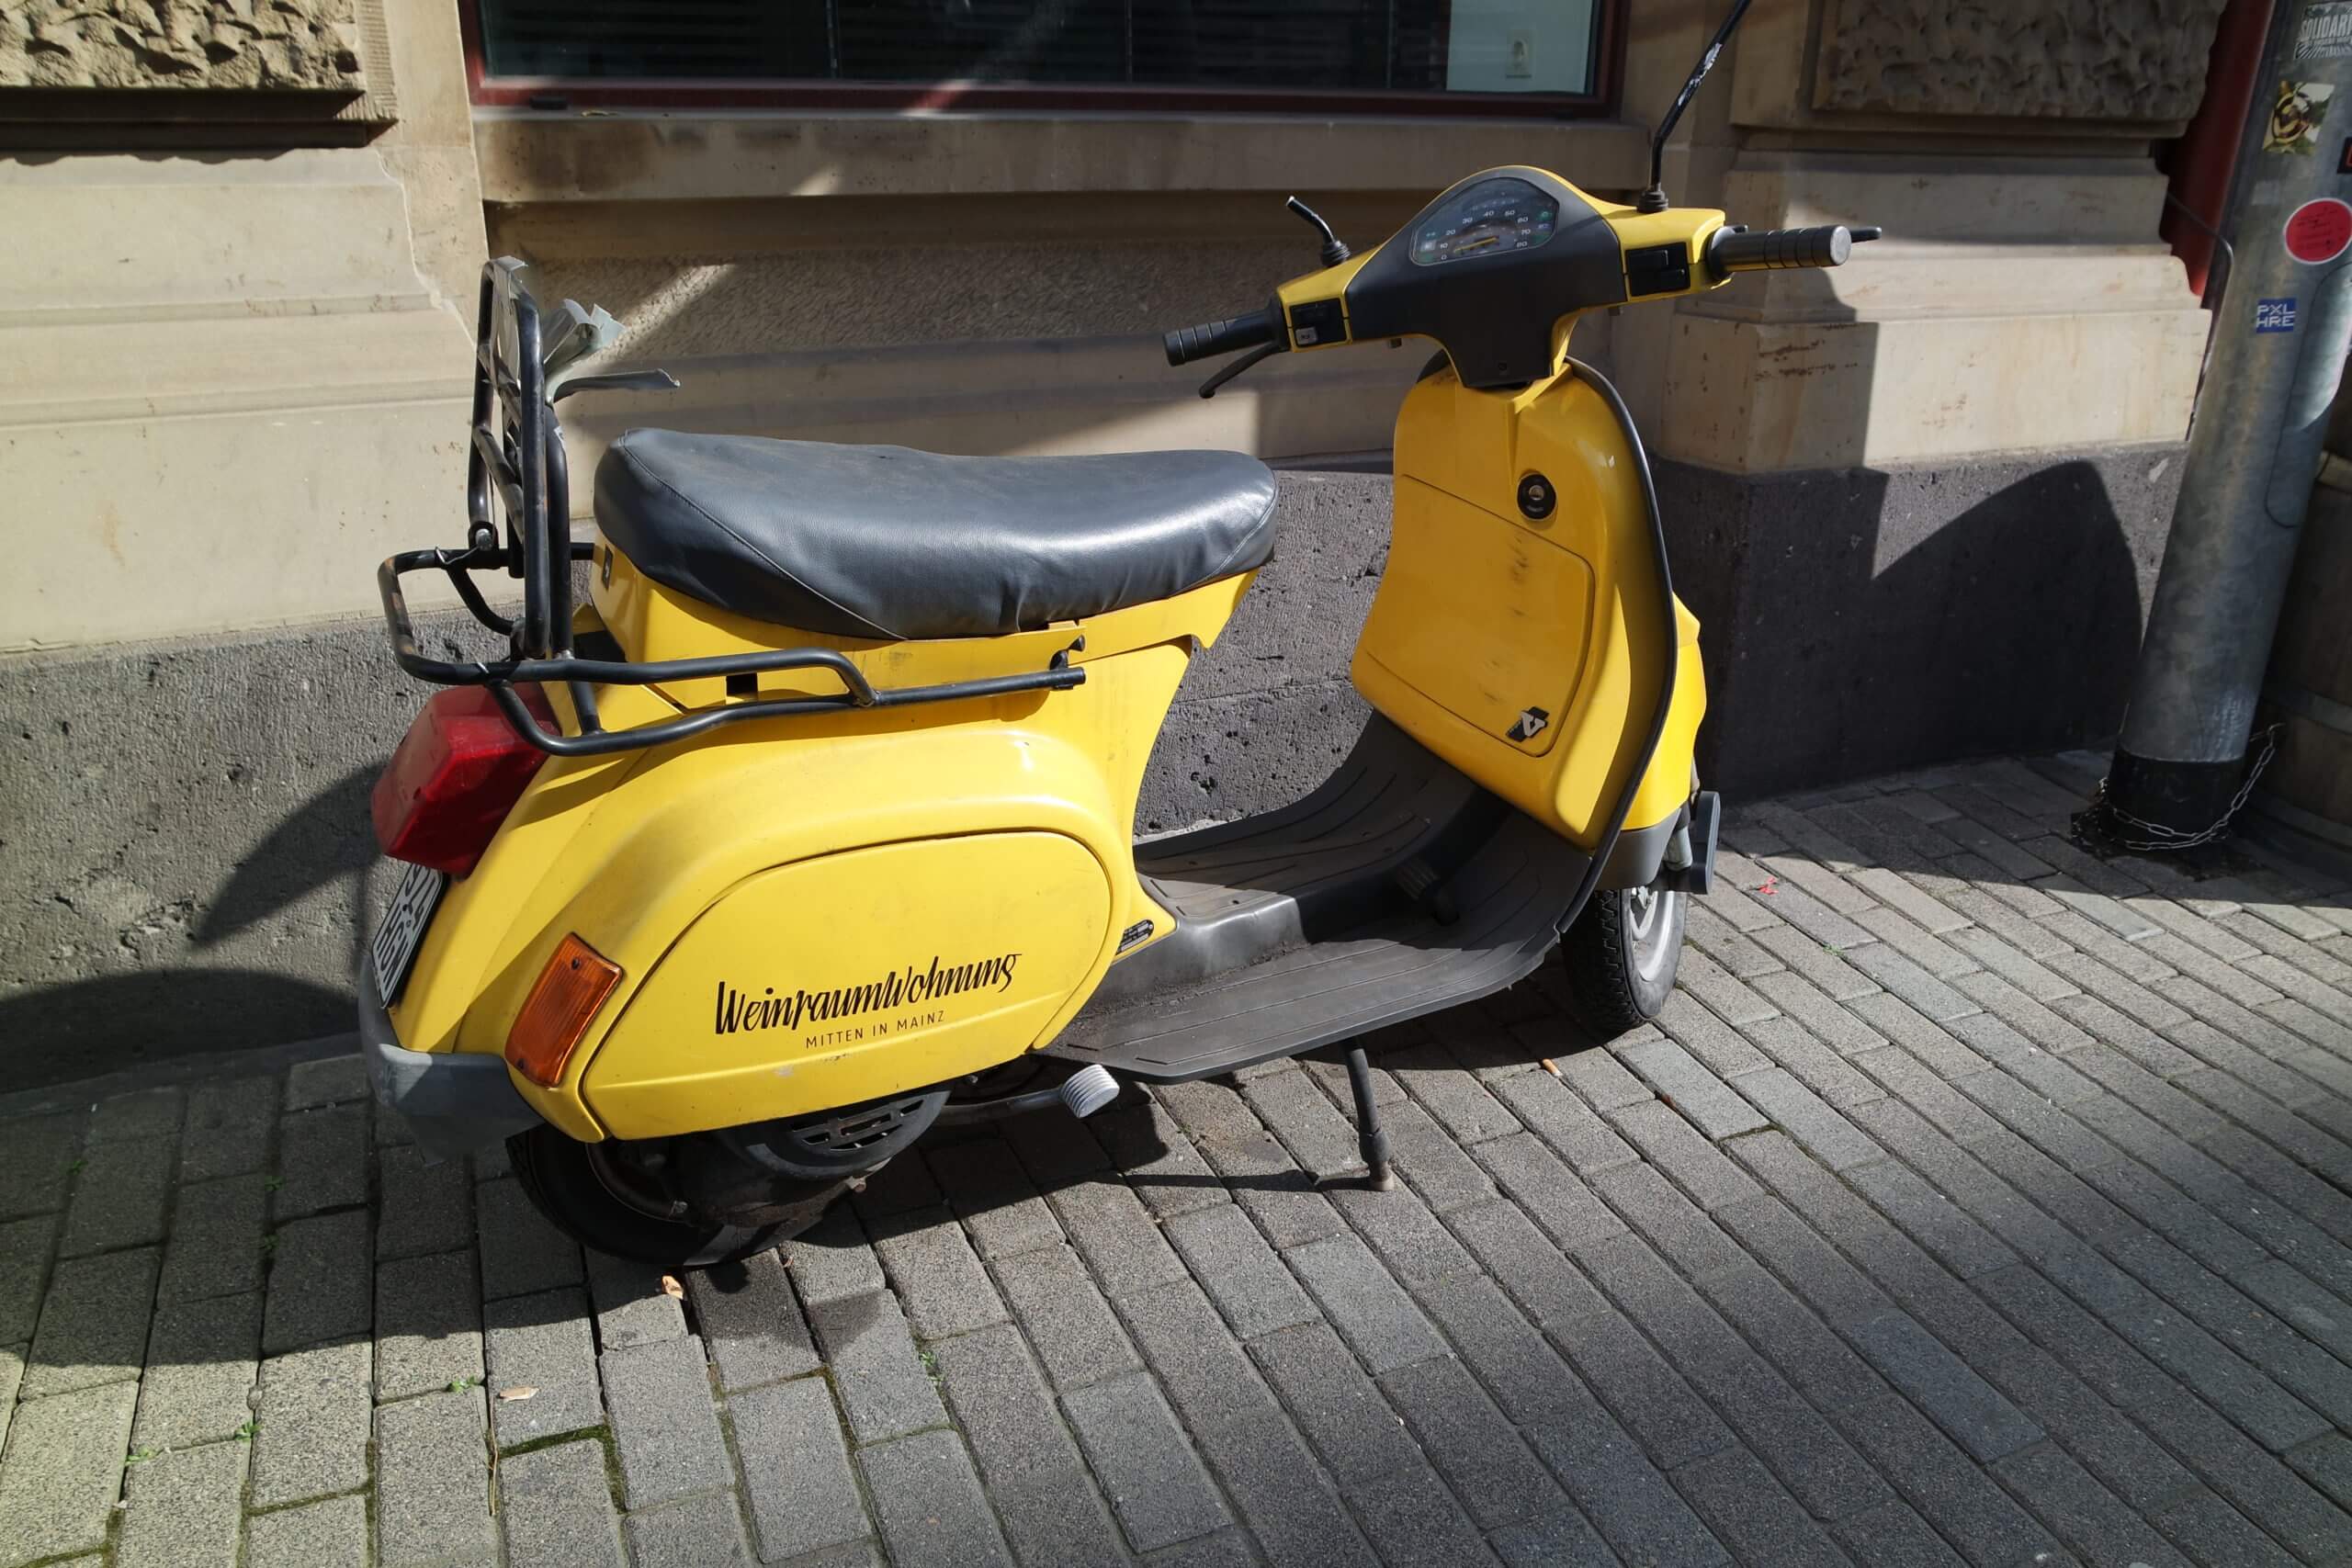 Hingucker: Der gelbe Motorroller vorm Laden.